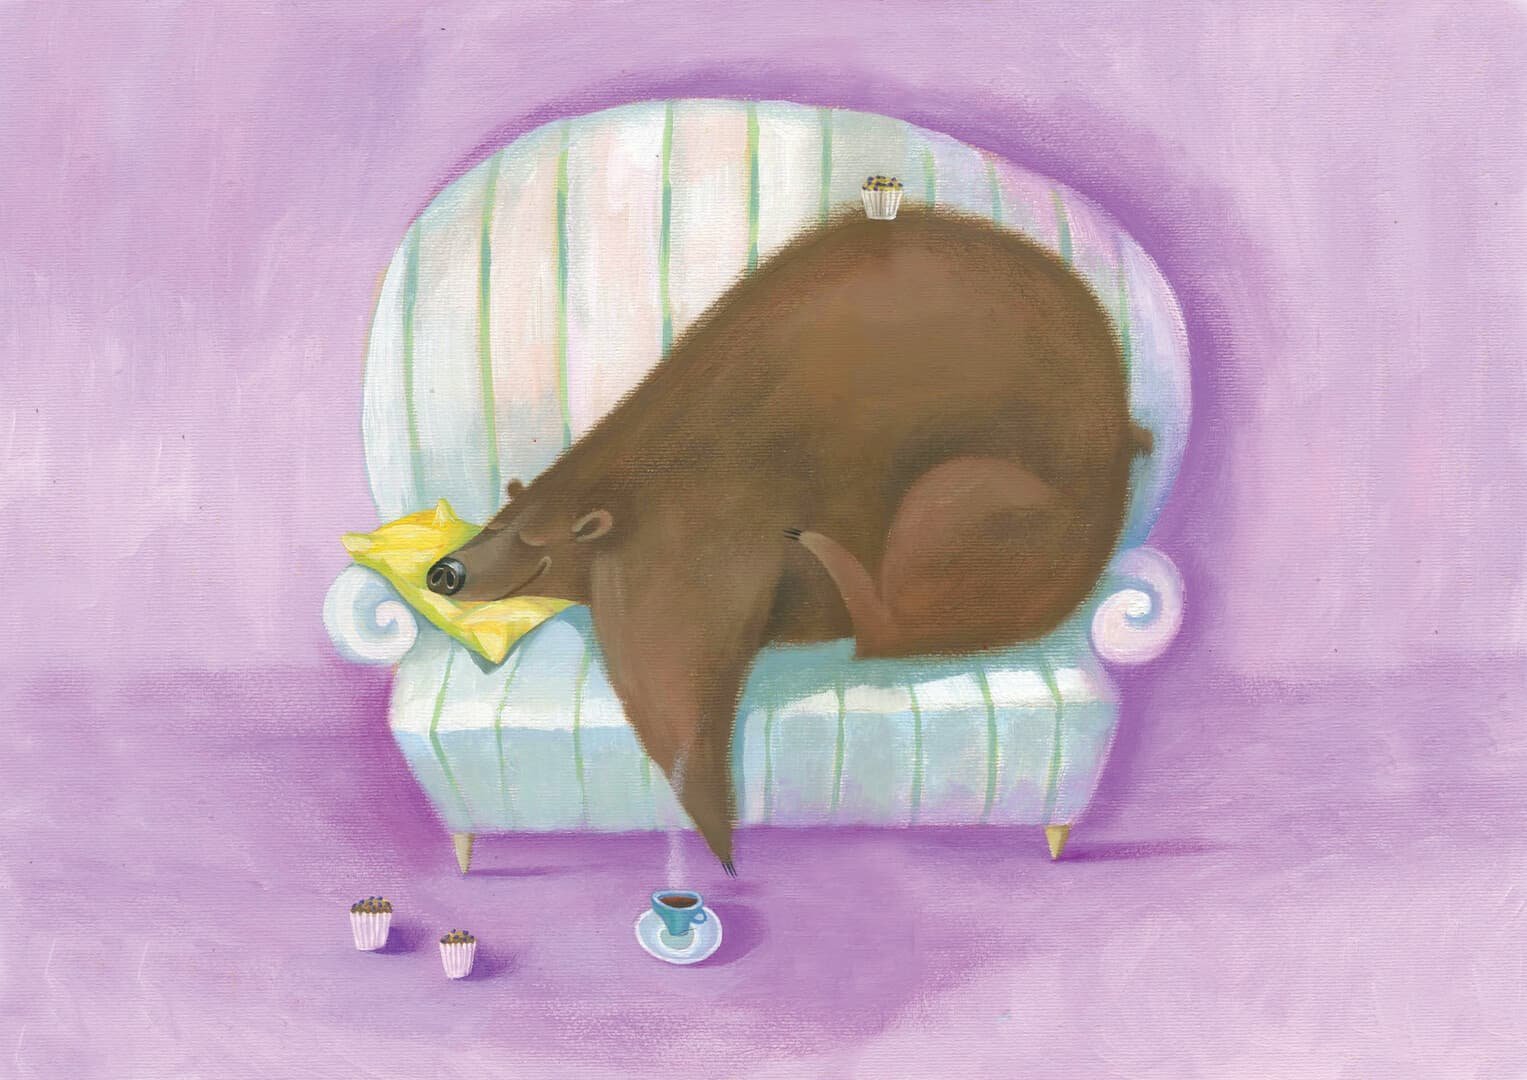 Мишки спать пора. Сонный медведь. Сон иллюстрация. Спящий мишка арт.